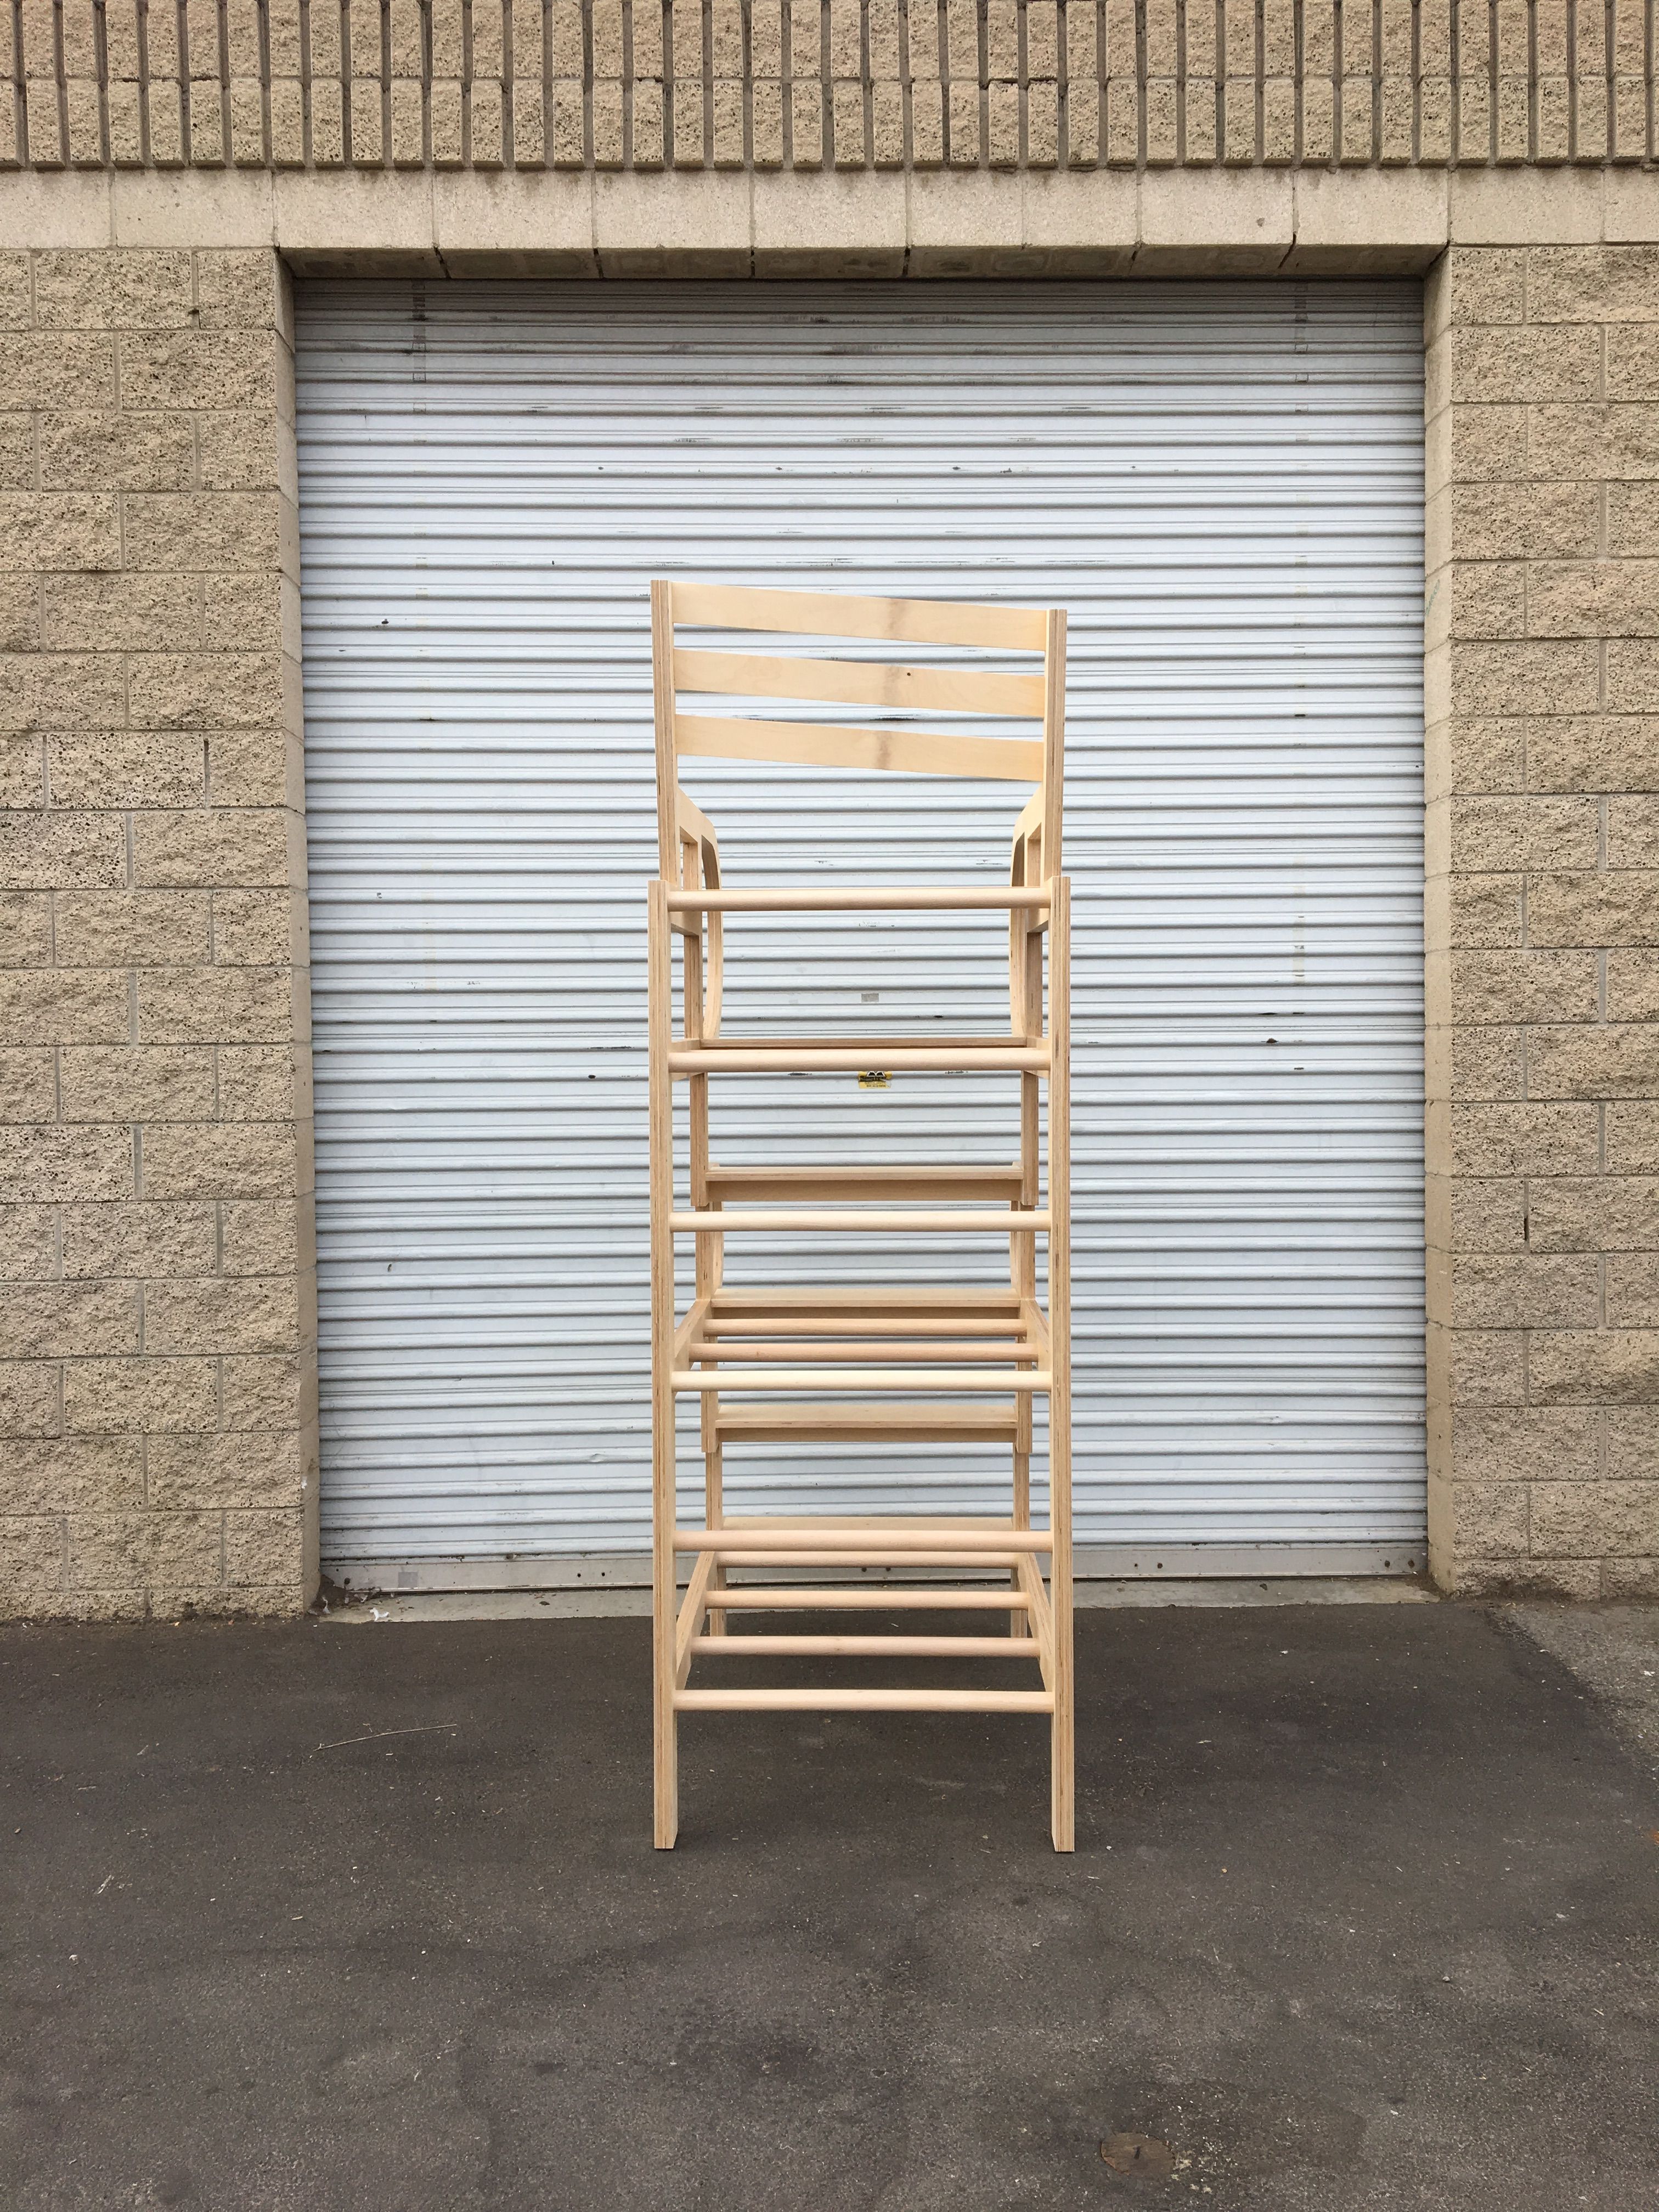  Climbable Chair - Owl Bureau x Adidas / Abbott Kinney Festival product image 0